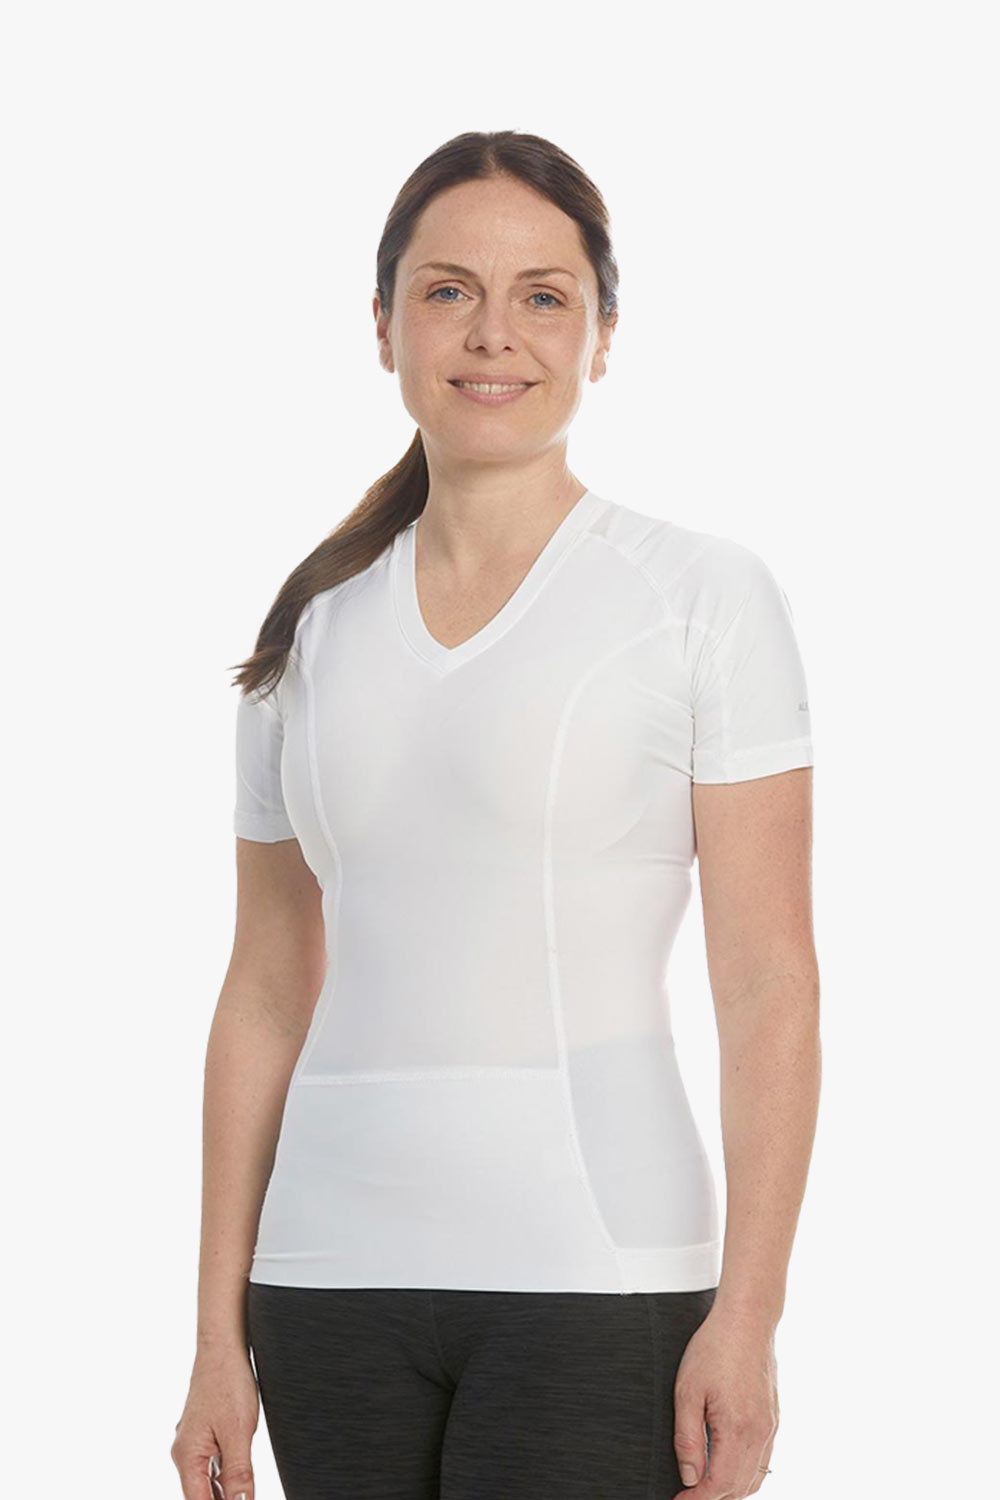 Women's Posture Shirt™ - Blanc